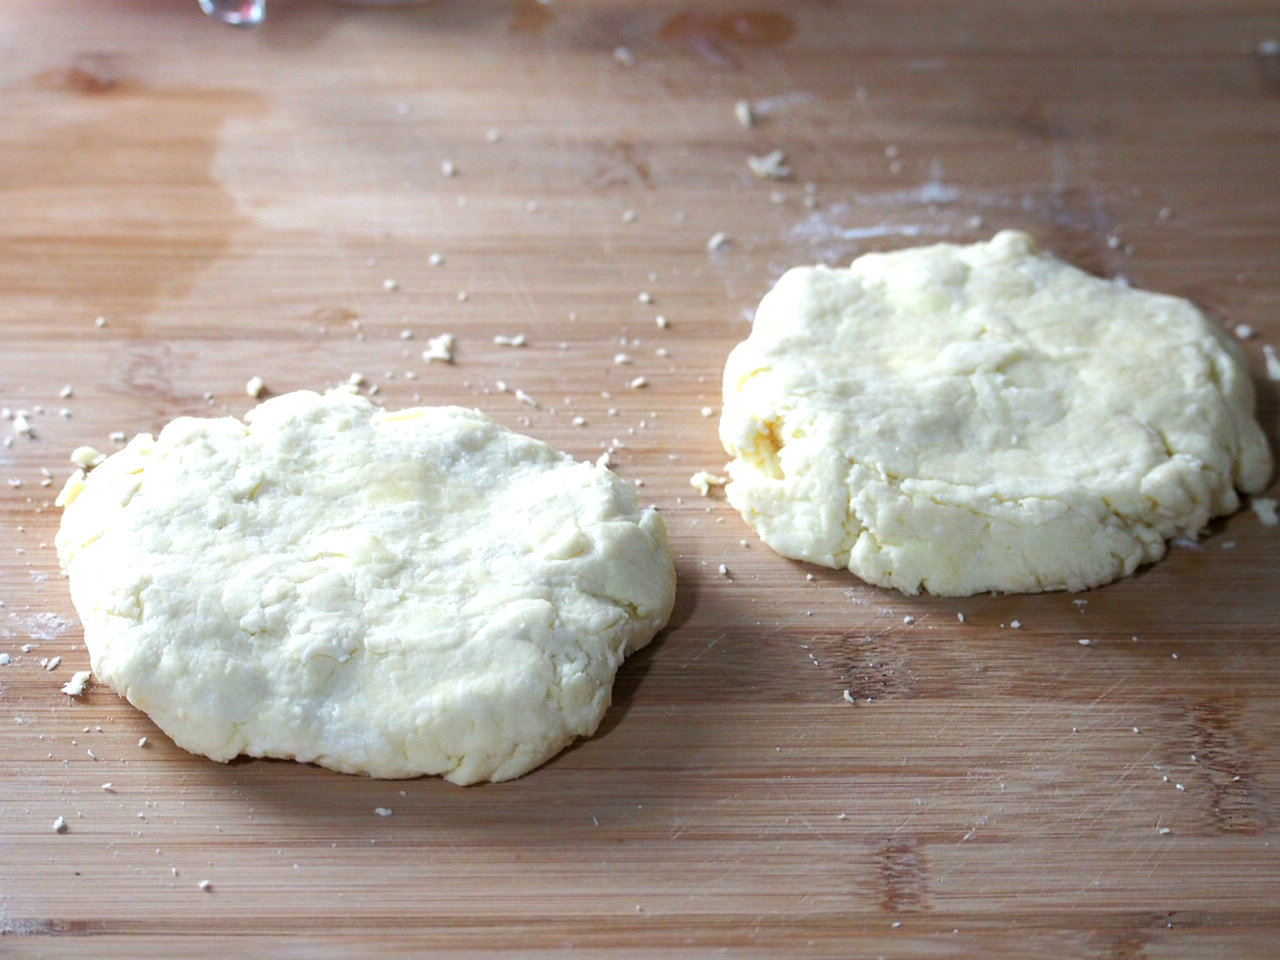 Galette dough